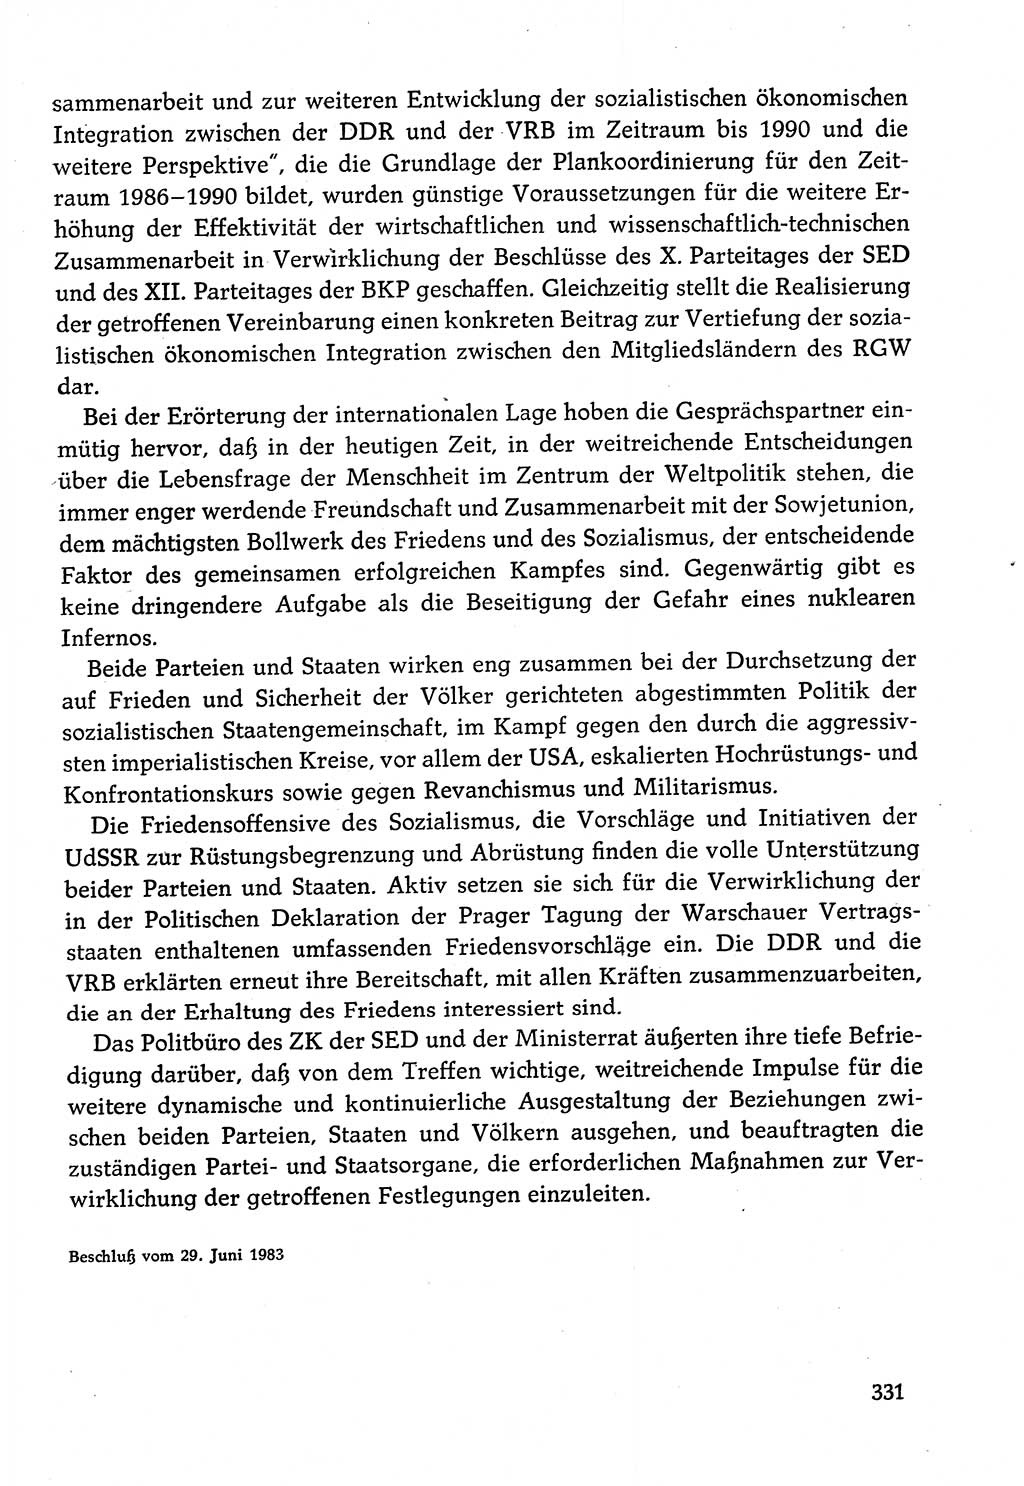 Dokumente der Sozialistischen Einheitspartei Deutschlands (SED) [Deutsche Demokratische Republik (DDR)] 1982-1983, Seite 331 (Dok. SED DDR 1982-1983, S. 331)